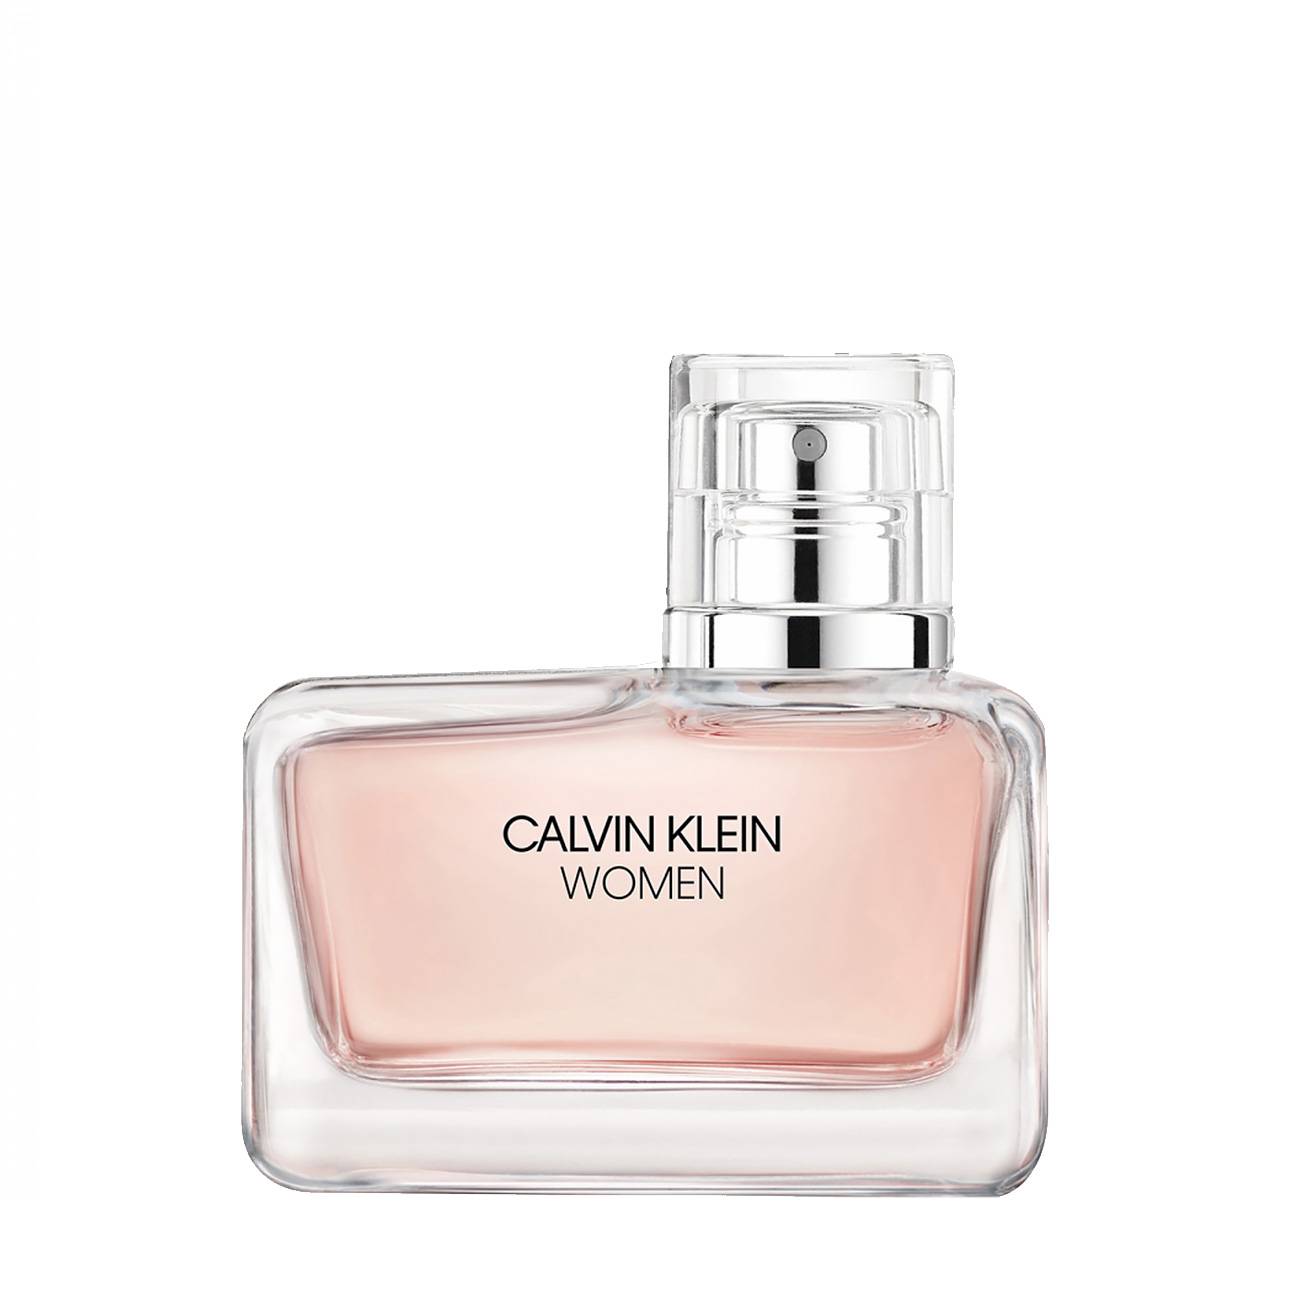 Apa de Parfum Calvin Klein WOMEN 50ml cu comanda online